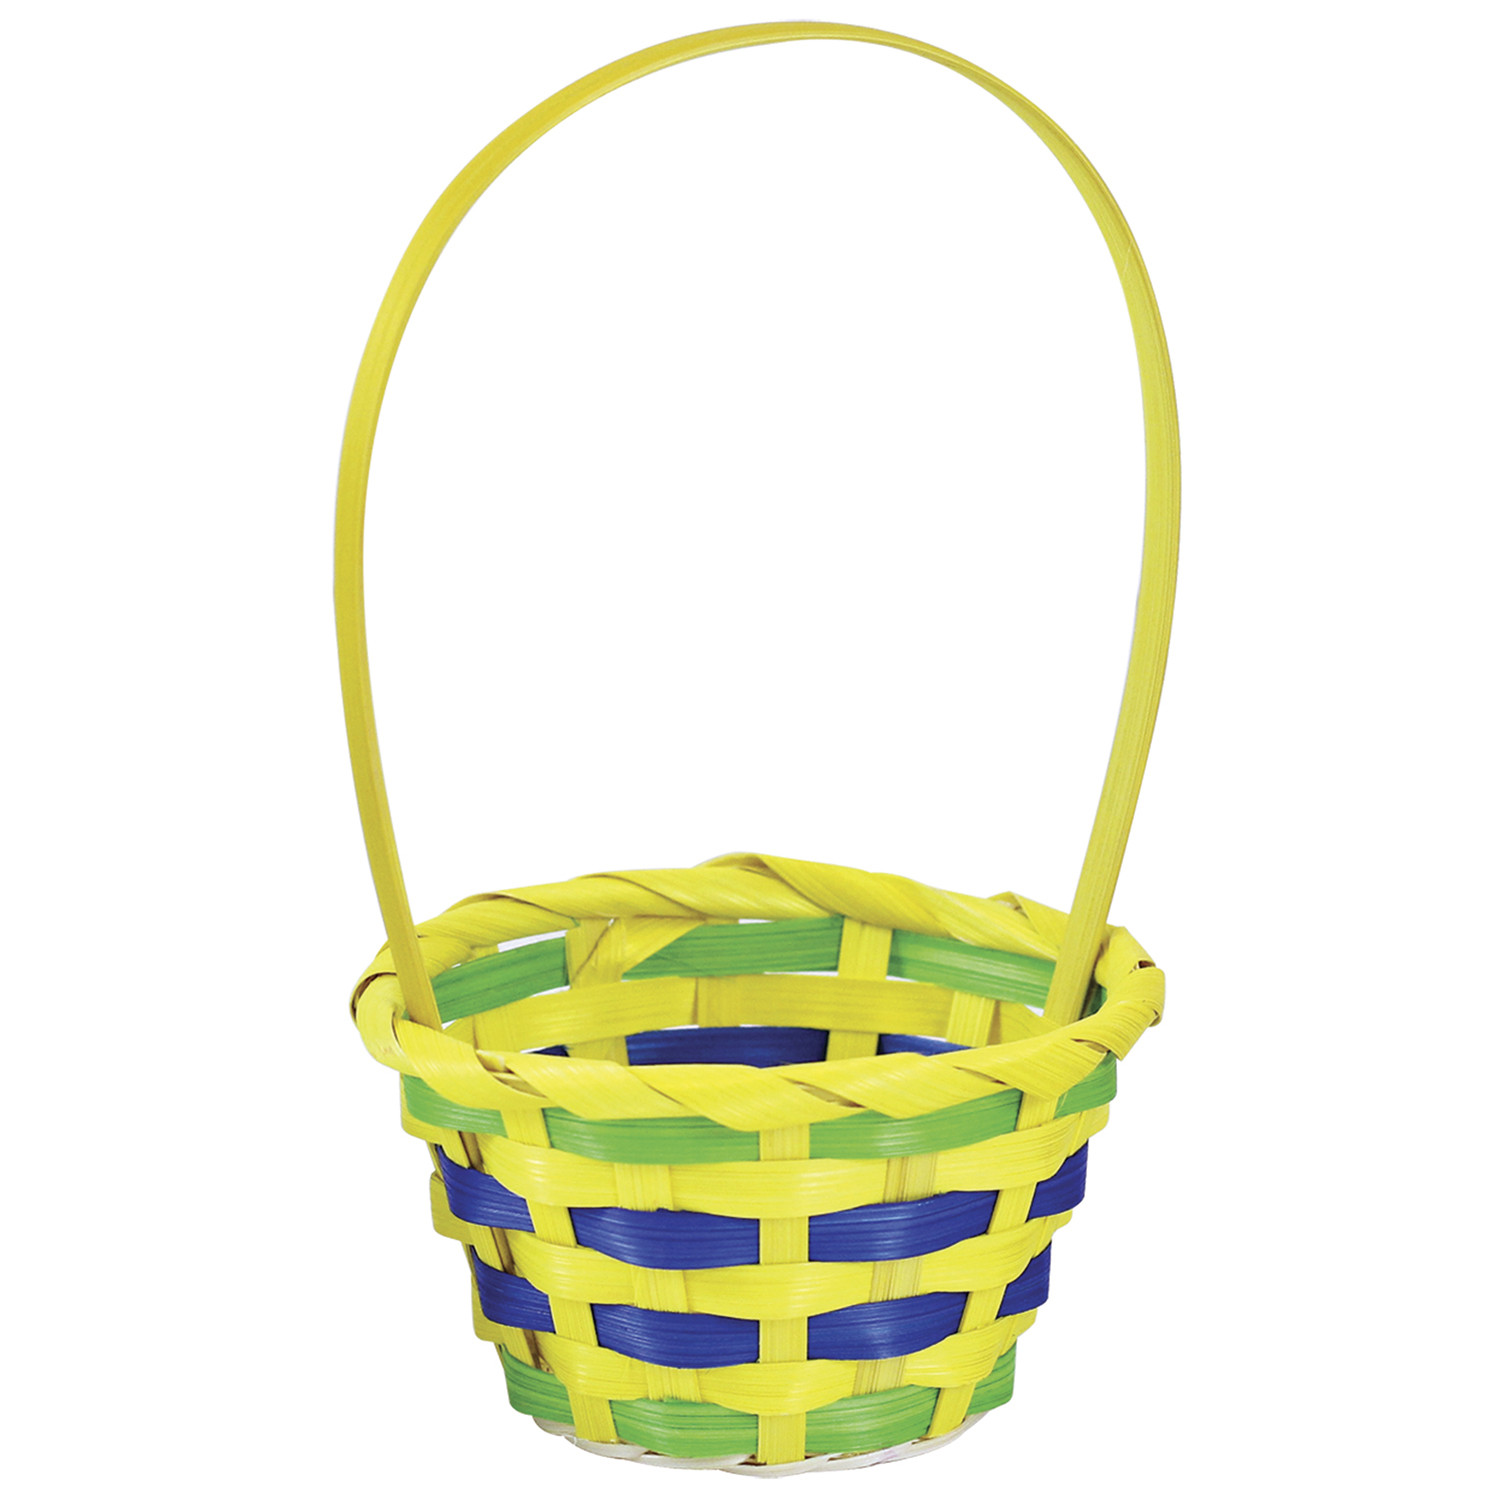 Plastic Easter Basket Image 2